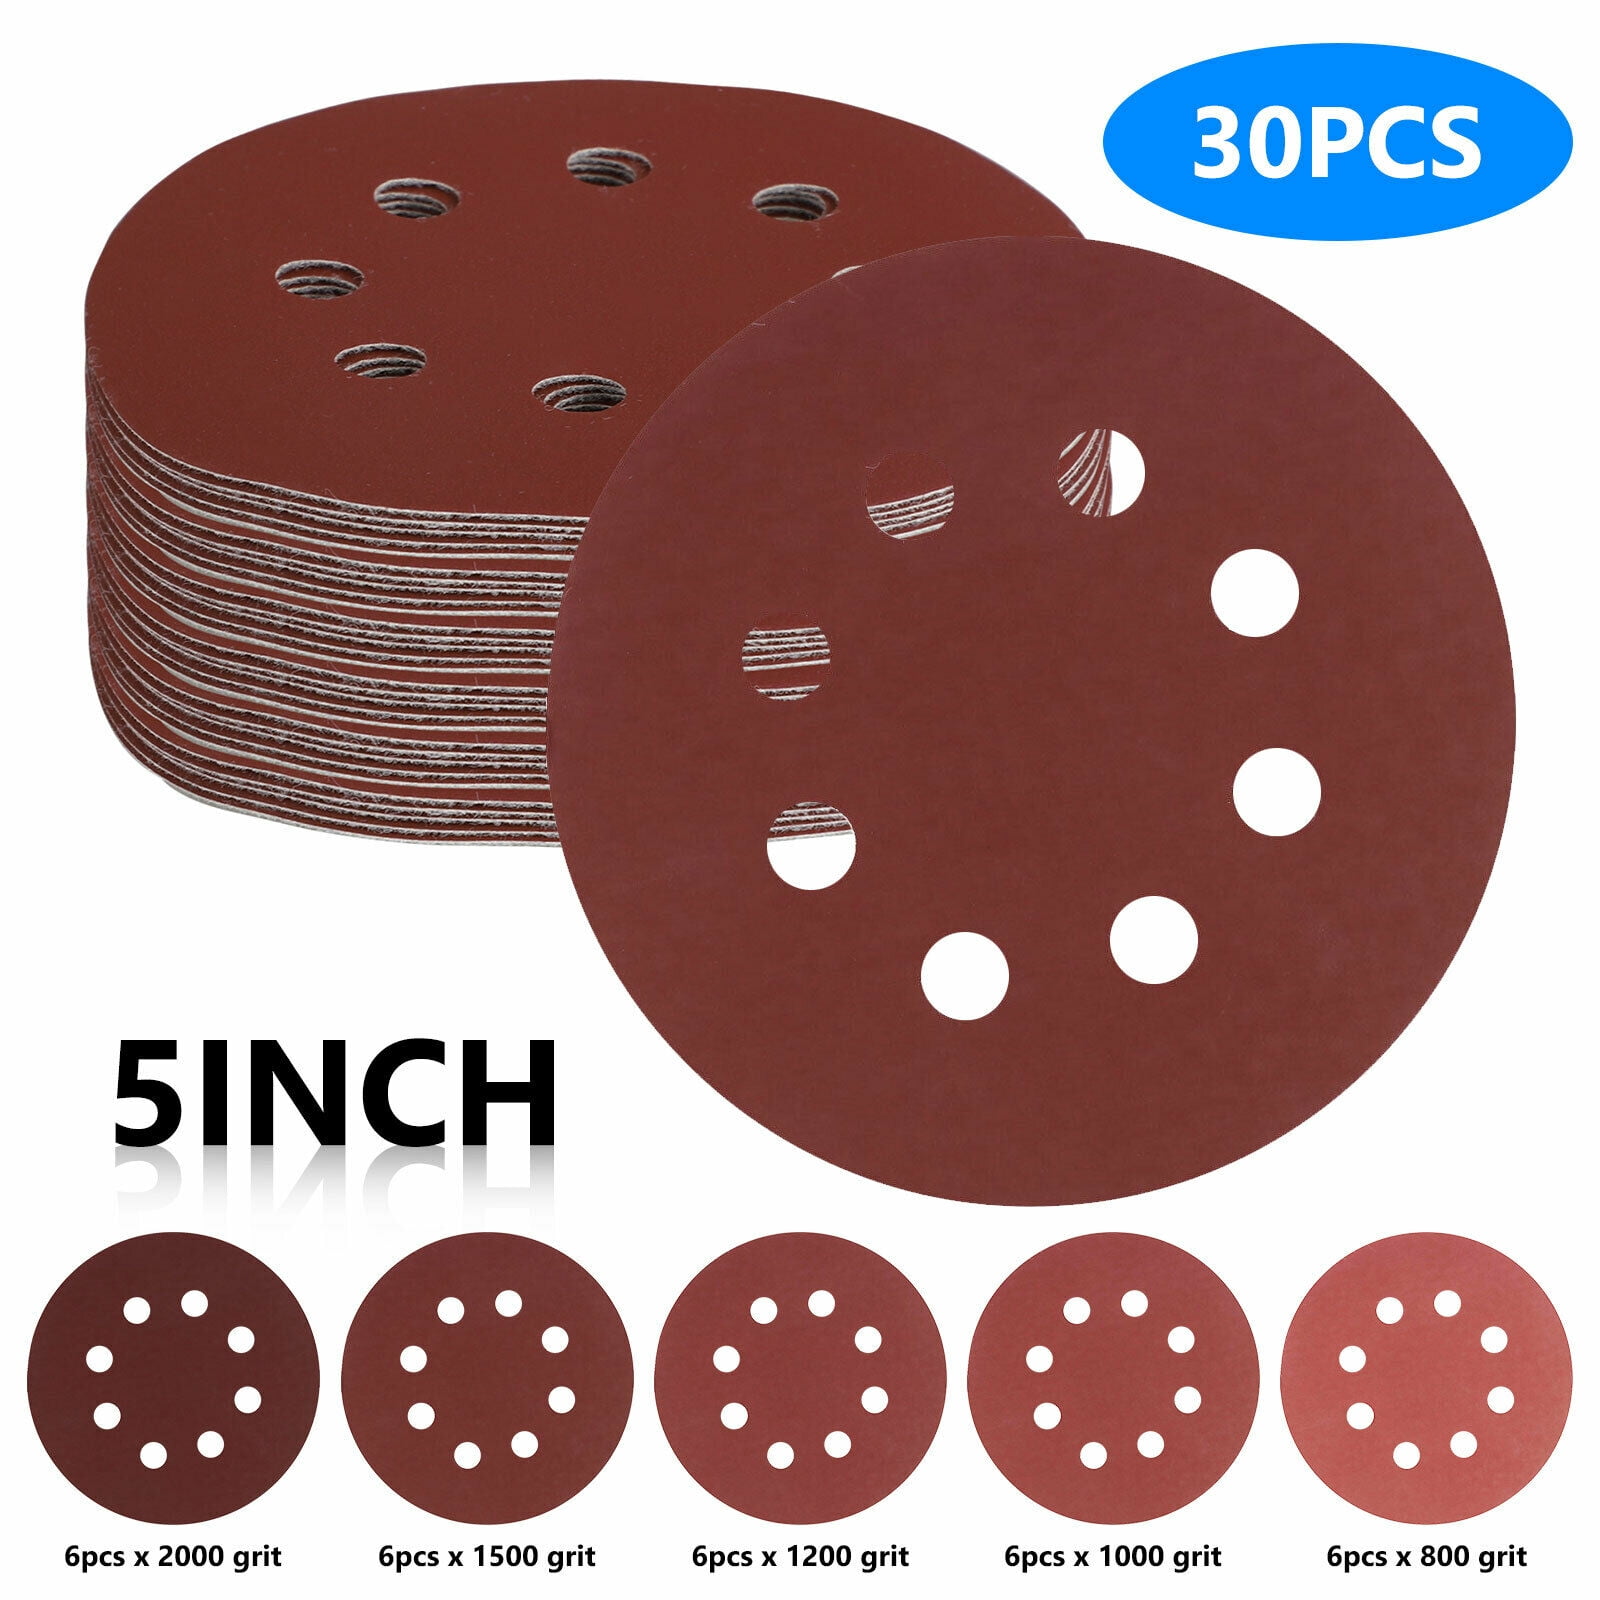 30Pcs 8 Hole Hook Loop Sanding Discs Sandpaper 5In for Random Orbital Sander US 